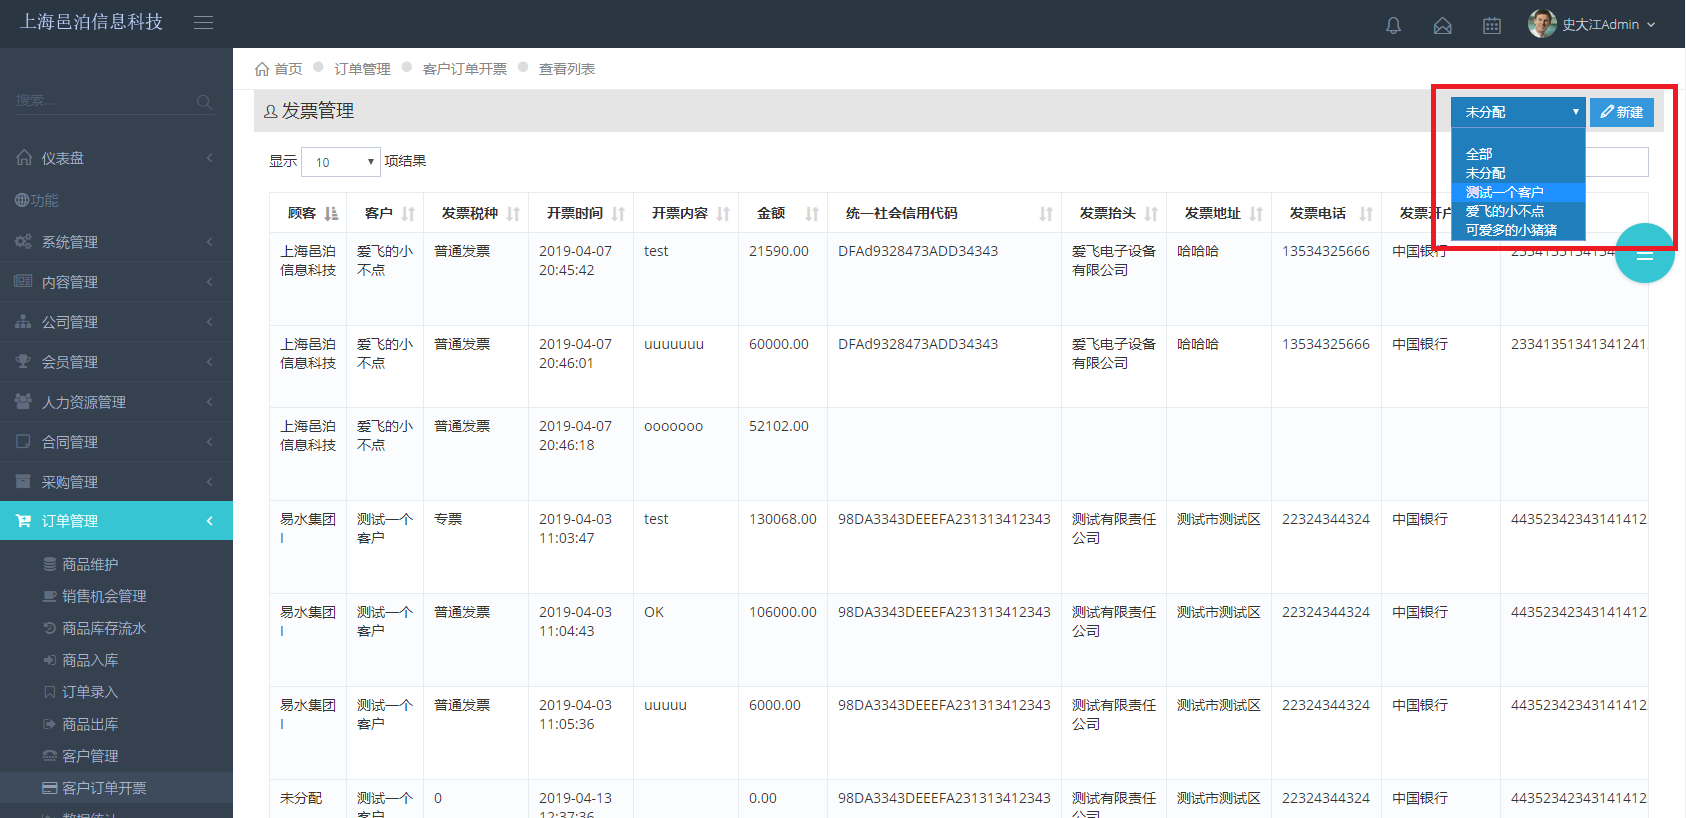 Shanghai Town Lake ERP订单管理软件拥有商品信息、进货入库、销售订单录入、销货出库、客户信息维护、发票管理、快递管理等模块功能。